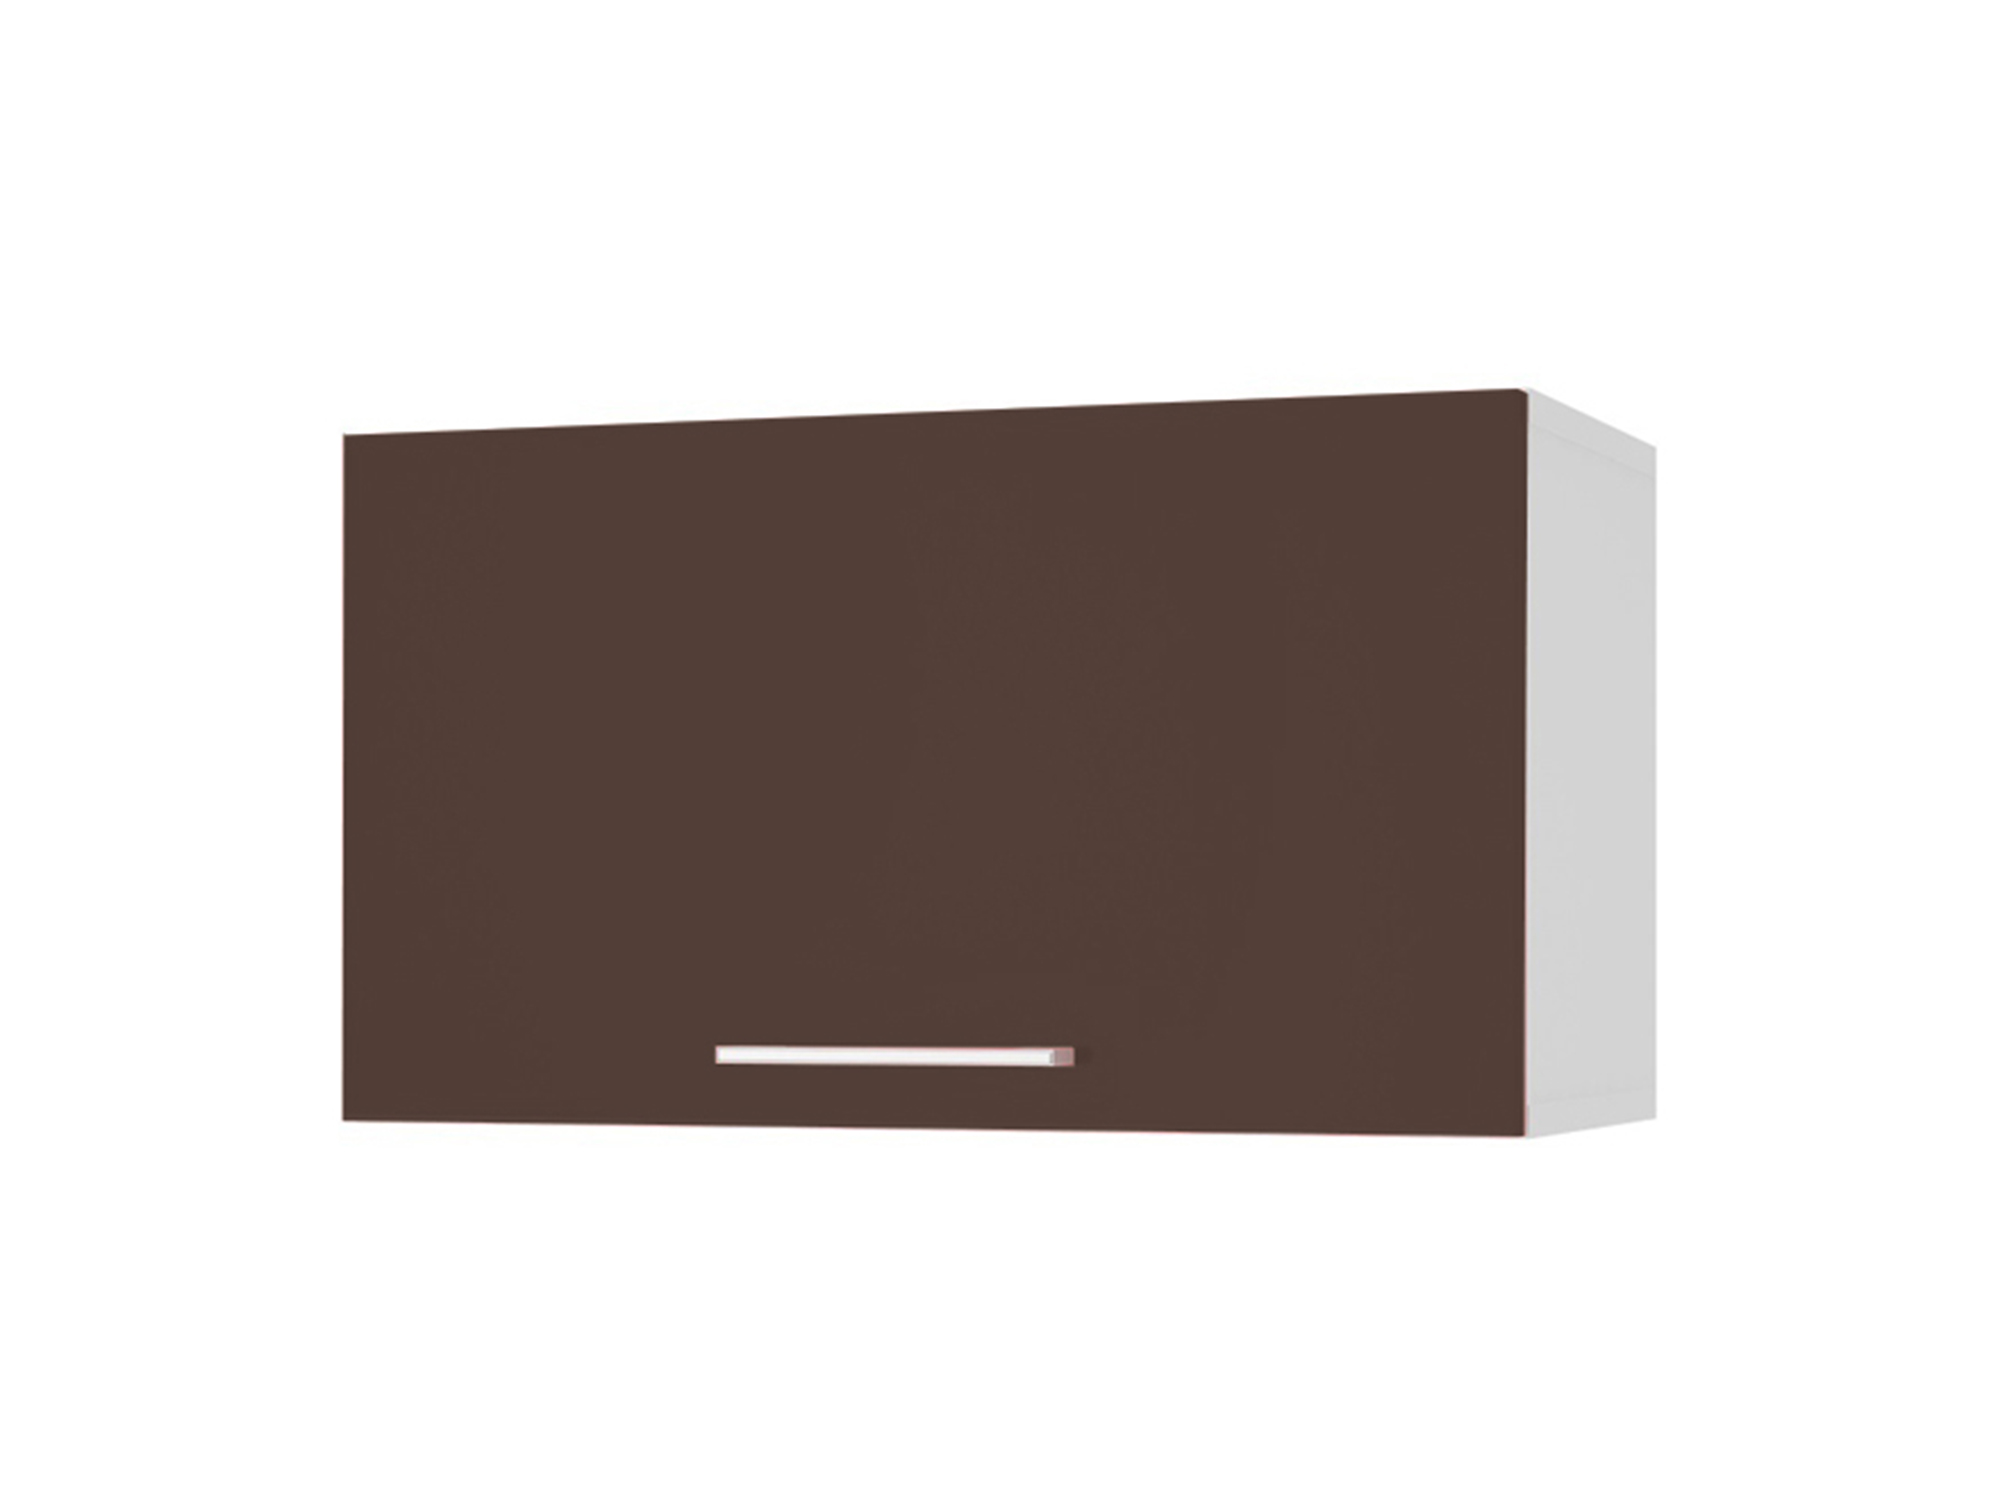 Шкаф навесной под вытяжку 60 Люкс Шоколад глянец, , Коричневый темный, Белый, МДФ, ПВХ, ЛДСП